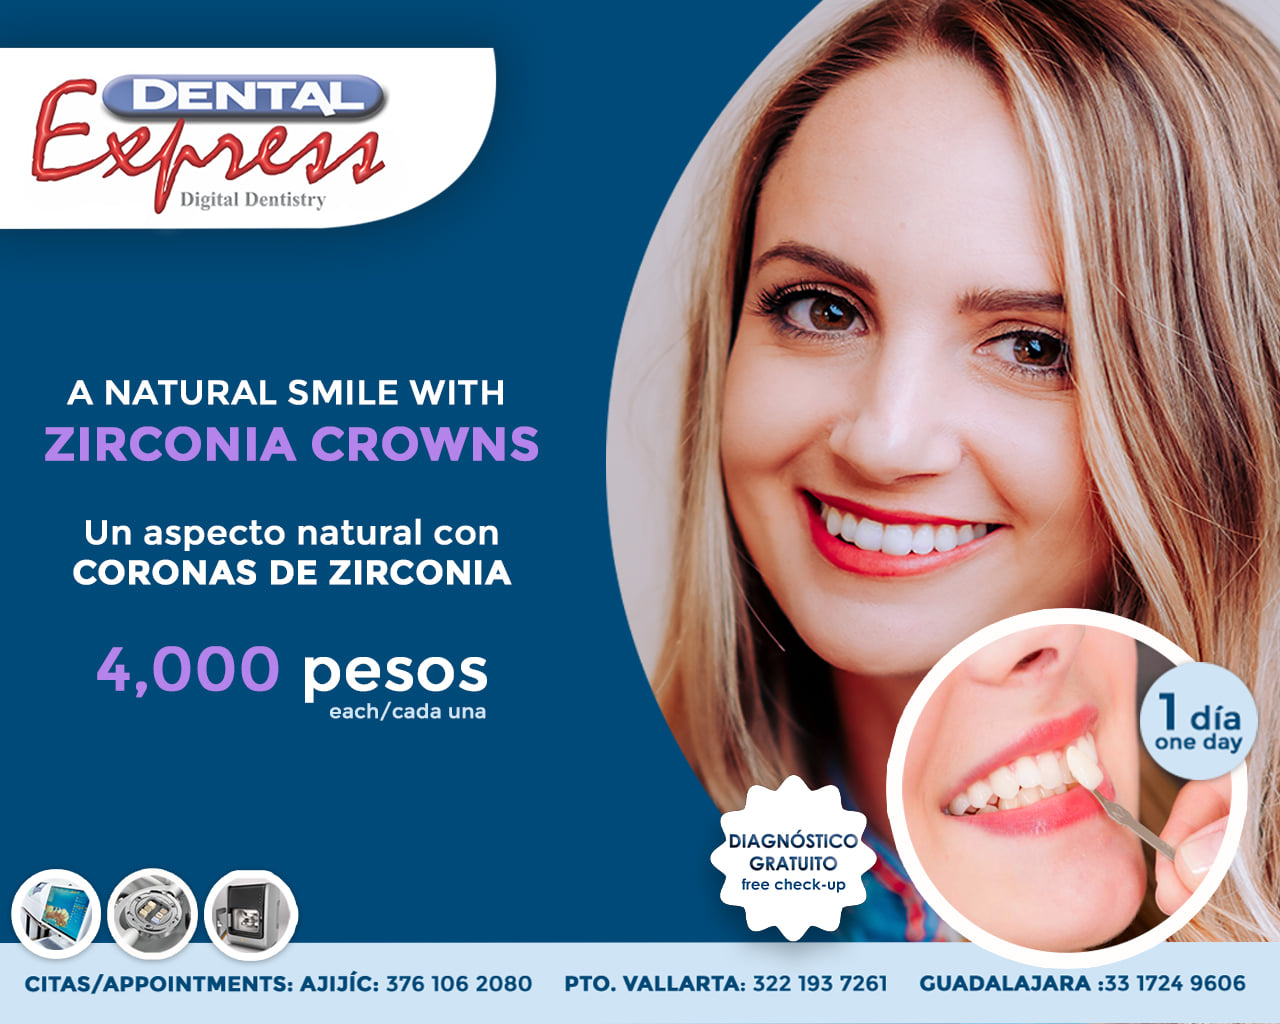 Dental Express - Cosmetic Dentistry - Puerto Vallarta Top Ten